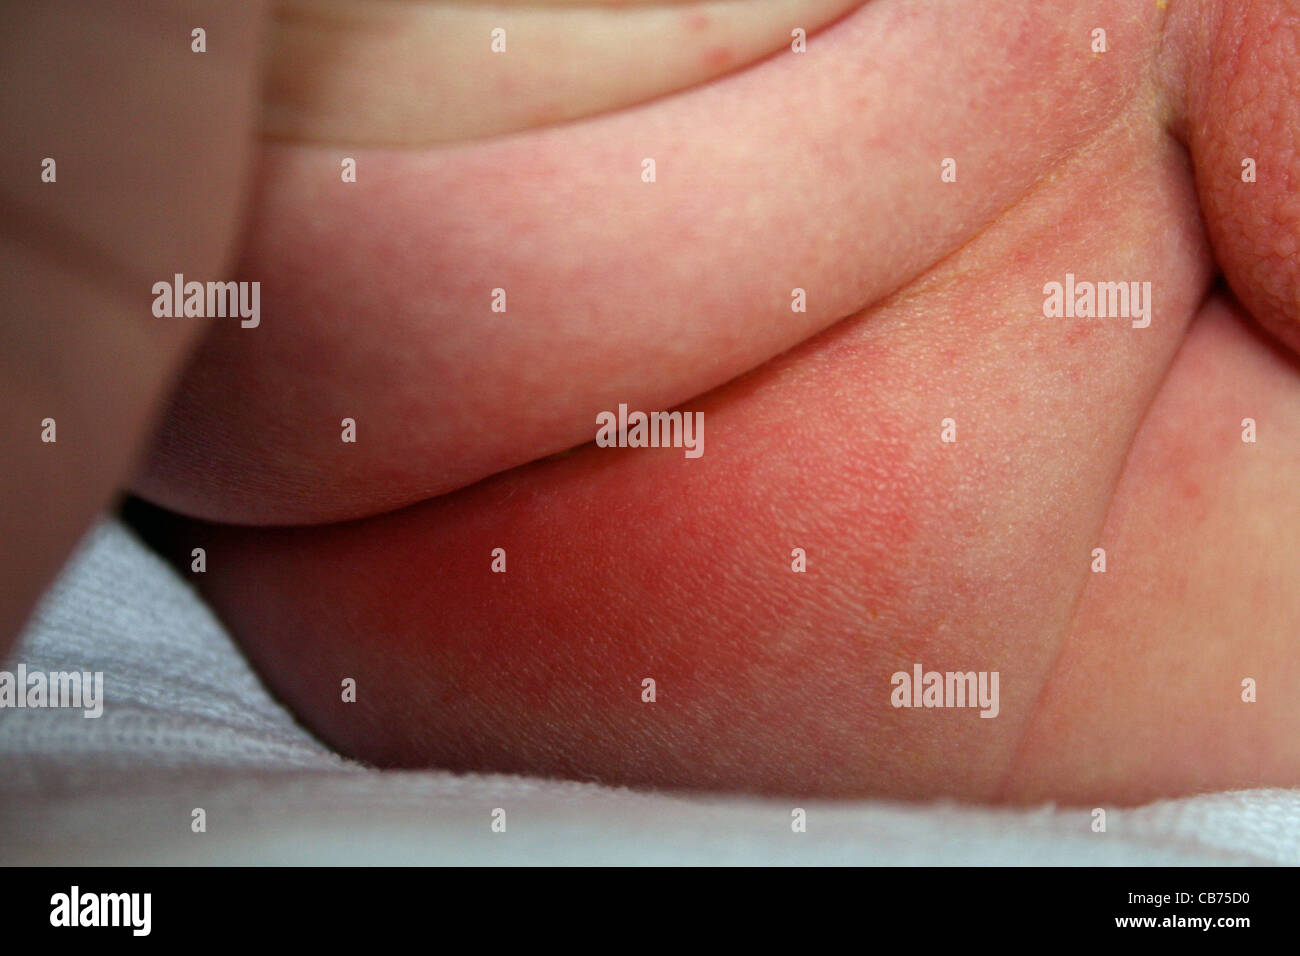 Nappy rash on baby's bottom Stock Photo